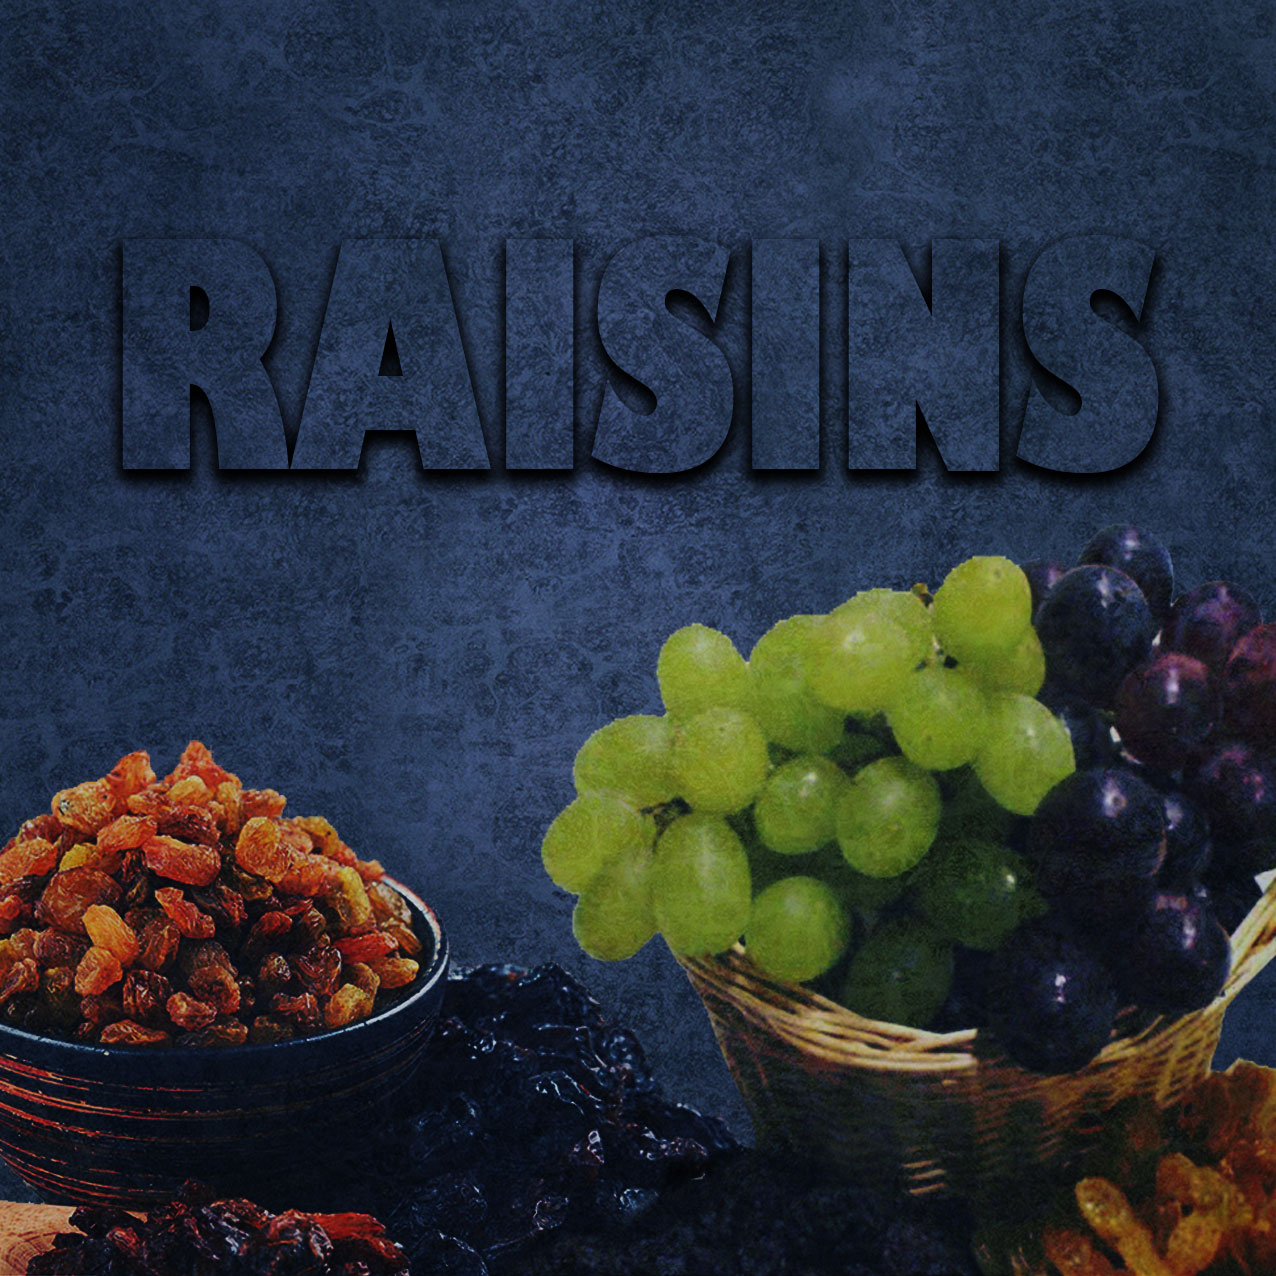 05. Raisins